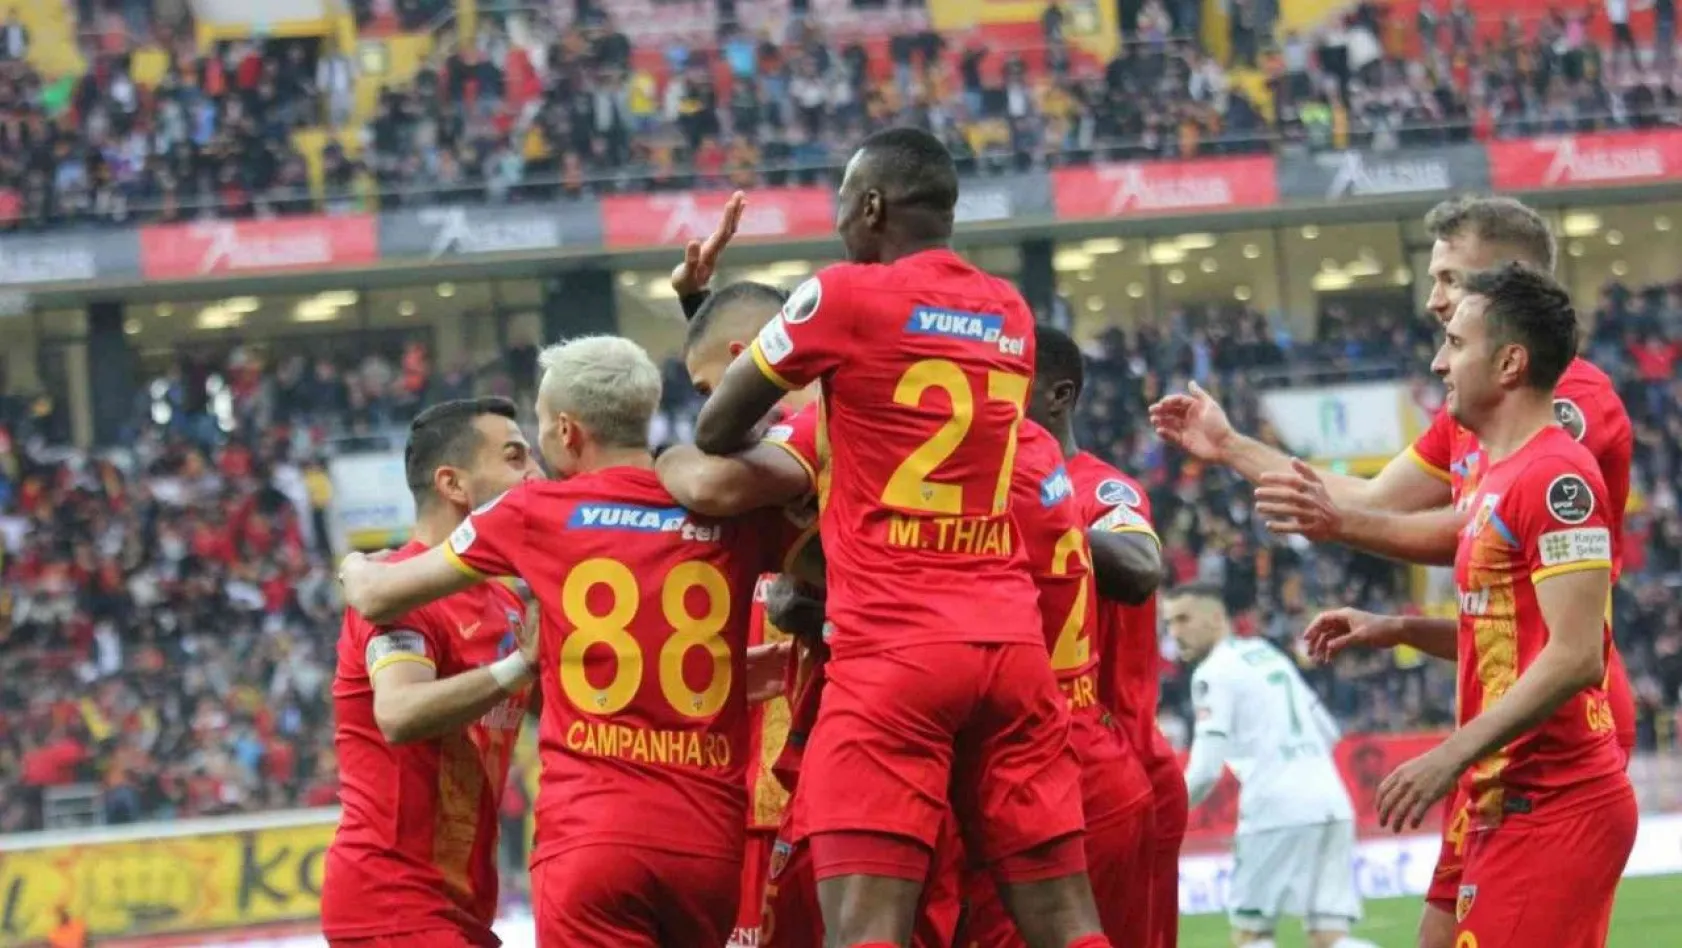 Spor Toto Süper Lig: Kayserispor: 1 - Konyaspor: 2 (Maç devam ediyor)